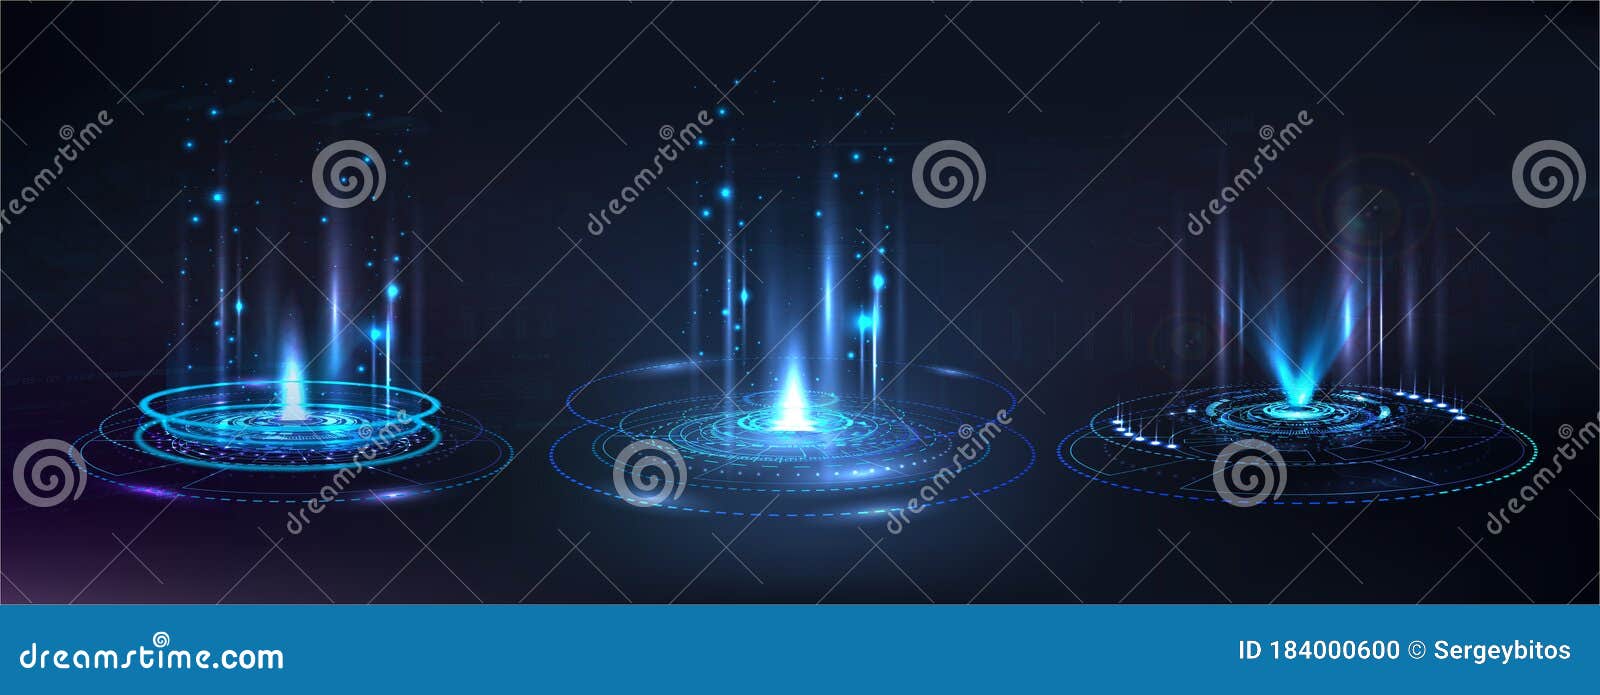 portal and hologram futuristic circle s